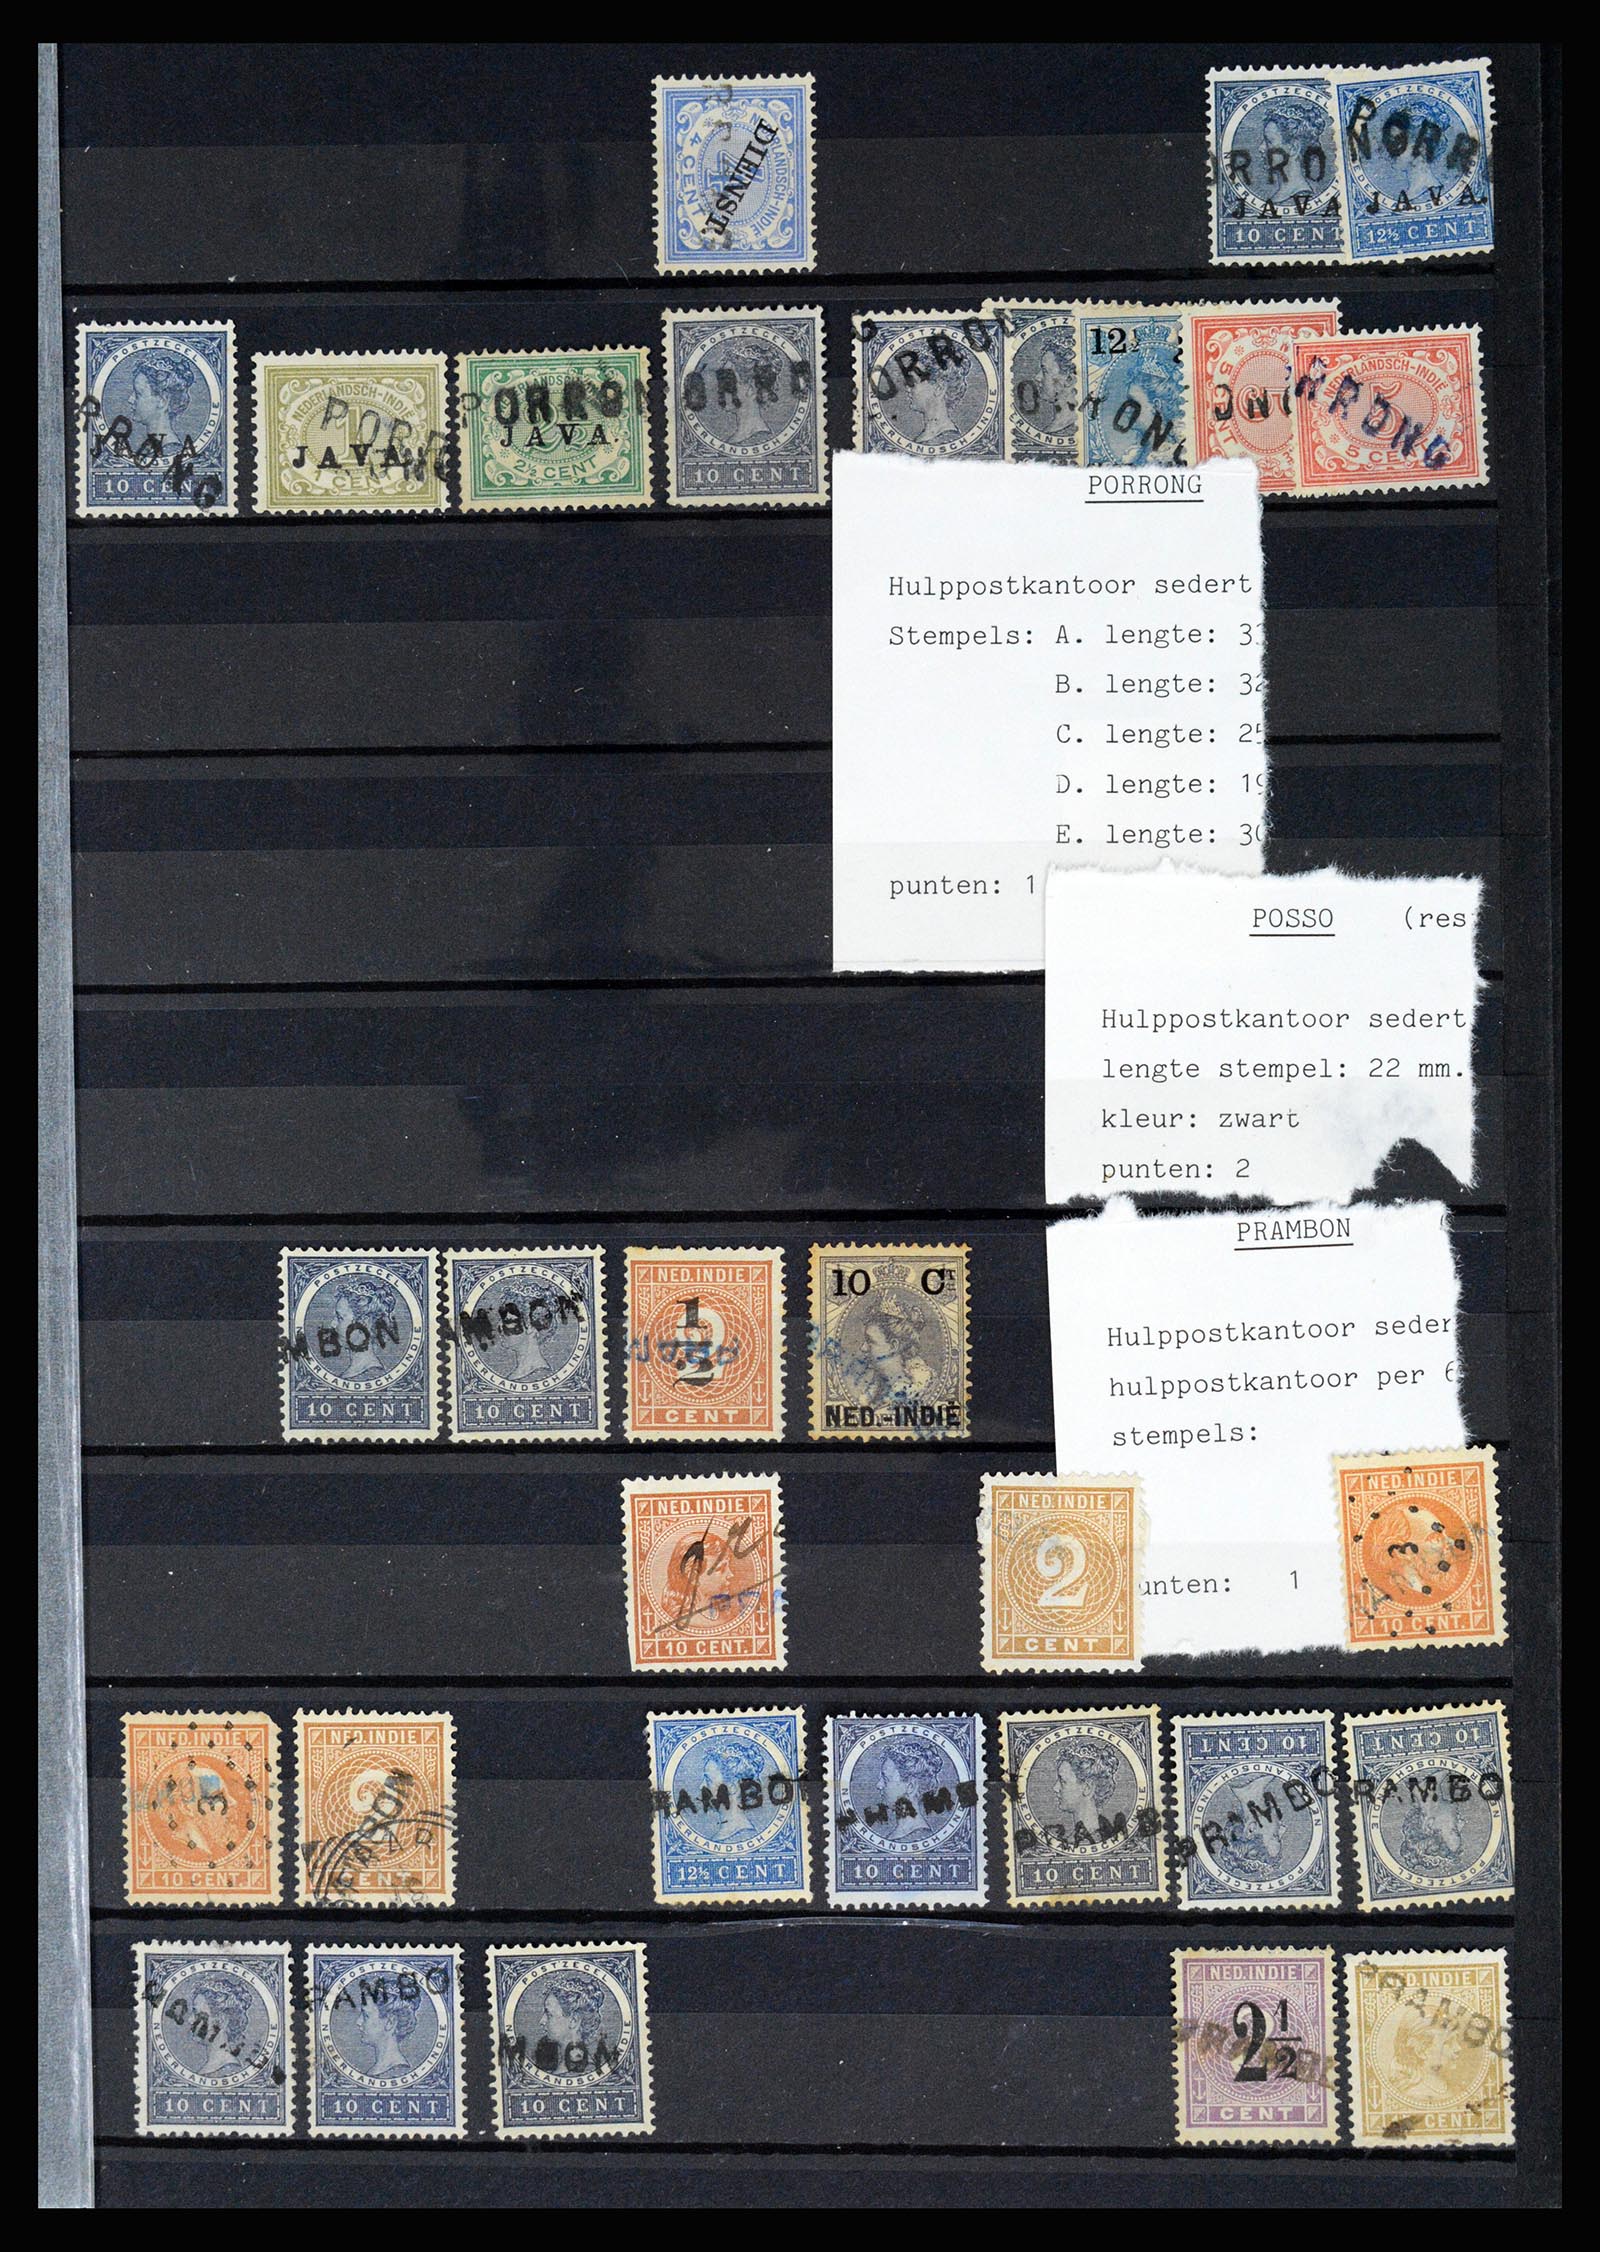 36512 059 - Stamp collection 36512 Nederlands Indië stempels 1872-1930.